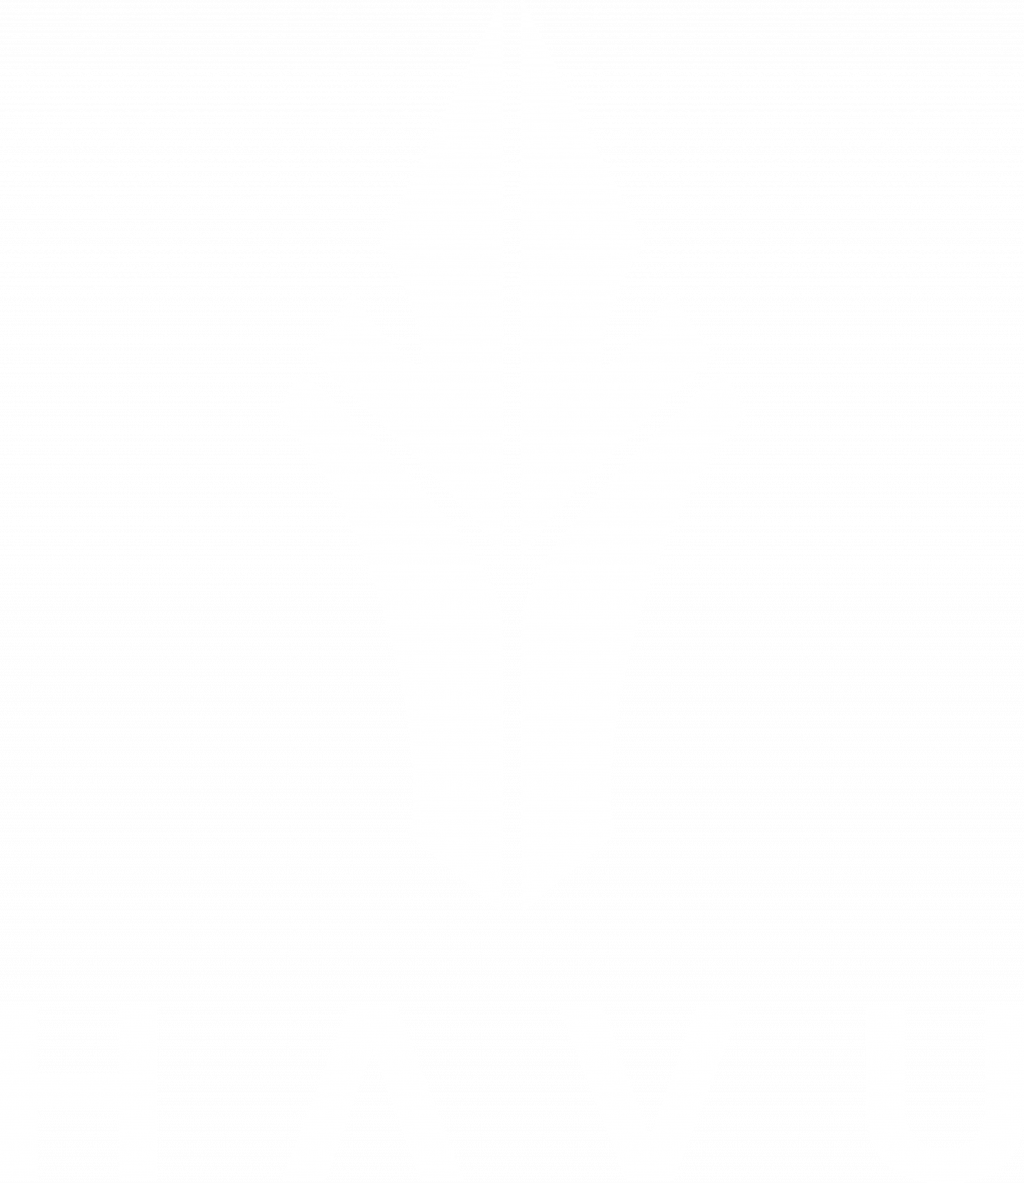 HAVU Gaming